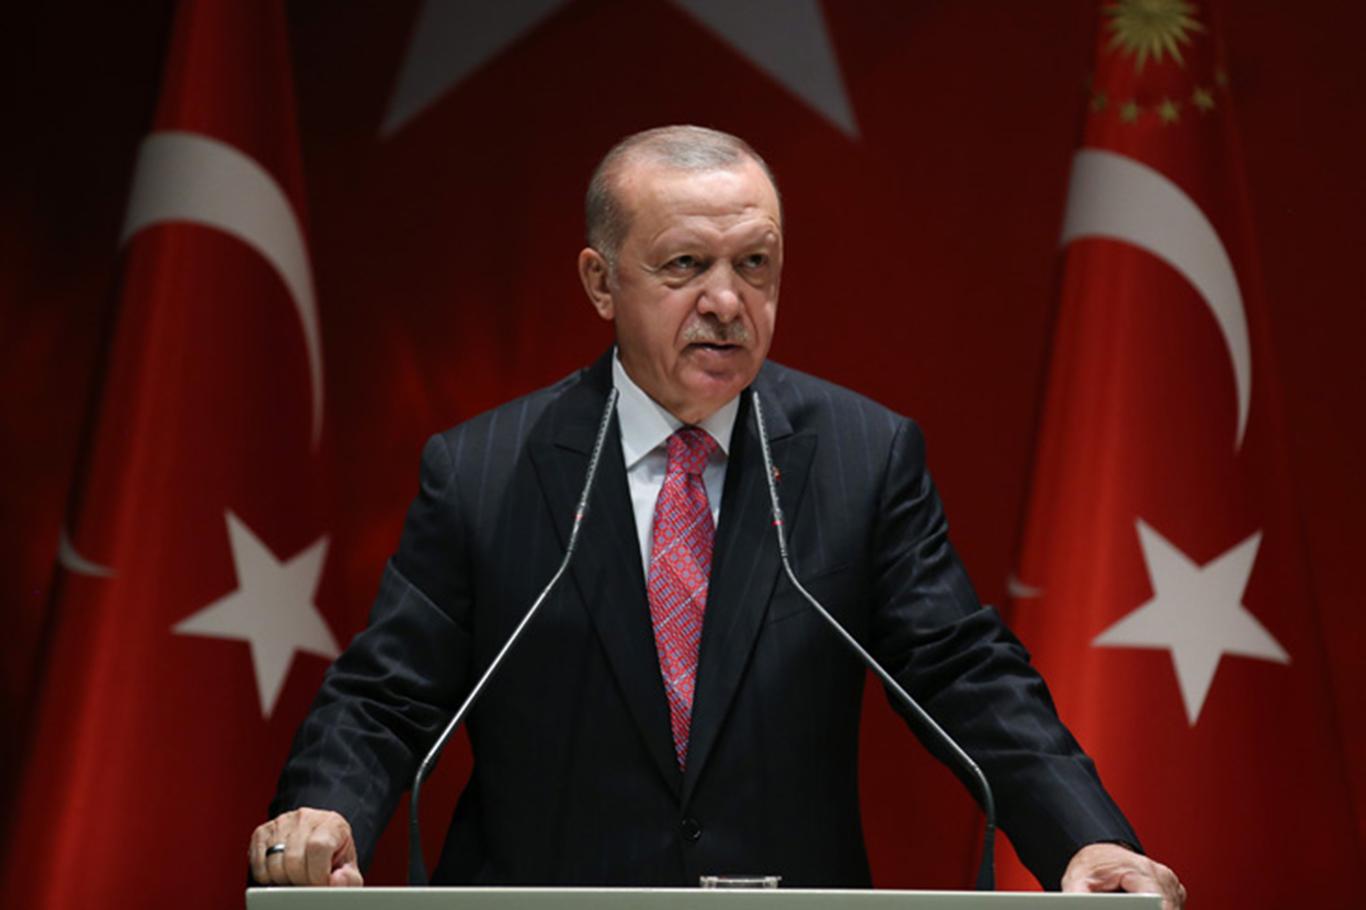 Cumhurbaşkanı Erdoğan: "Doğu Akdeniz’de çözümün yolu, diyalog ve müzakeredir"